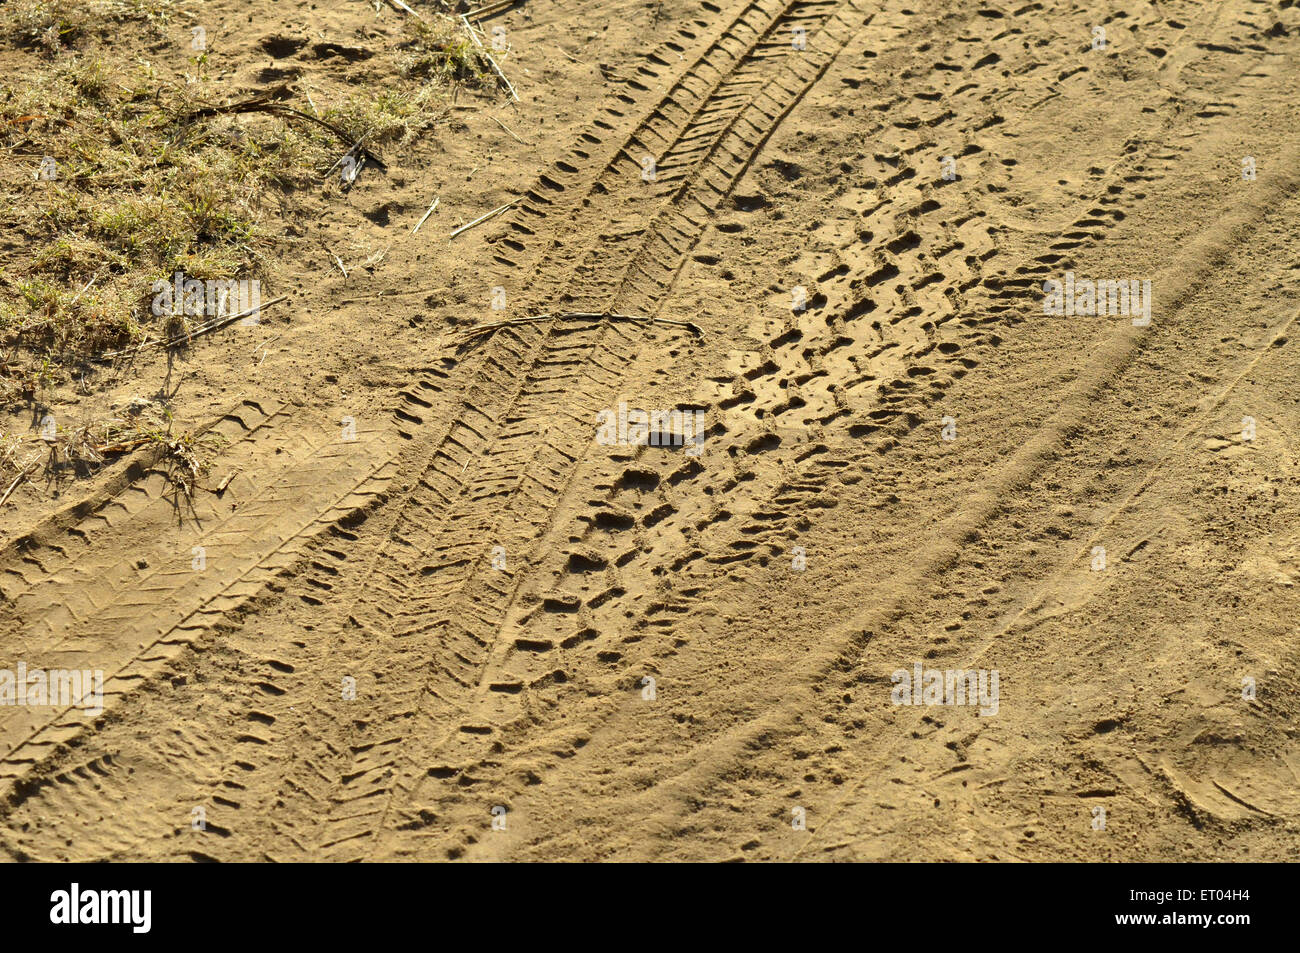 Jeep tracce di pneumatici nel fango a Gujarat India Foto Stock